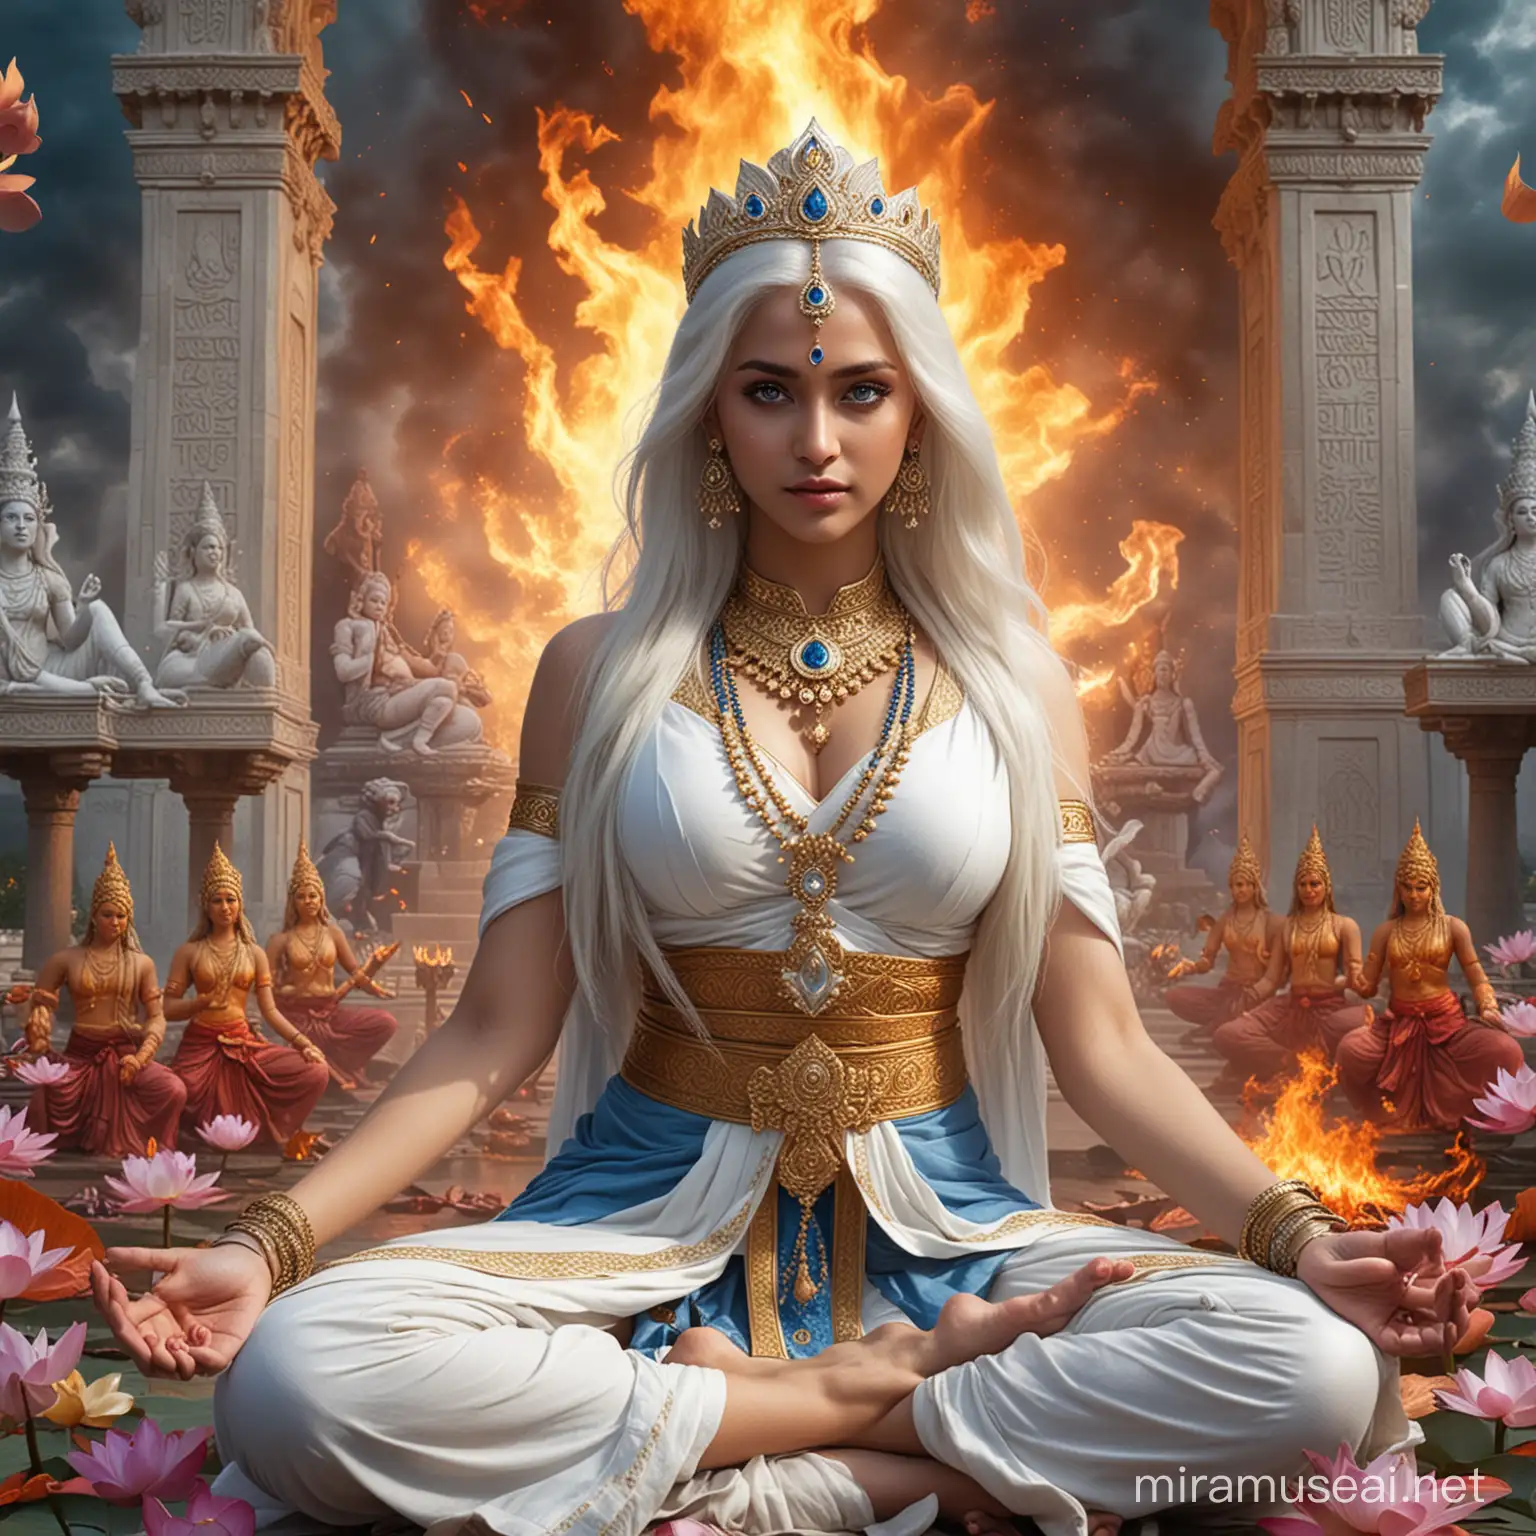 Diosa emperatriz hindu hermosa joven de cabellos blancos largos y ojos azules vestida como Diosa emperatriz hindu en combate sentada en posición flor de loto rodeada de fuego  y rodeándola diosas y dioses hindus llenos de  poder y fuego, y de fondo un gigantesco palacio hindu tenebroso y la palabra kayashiel emperatriz escrita con letras de fuego 